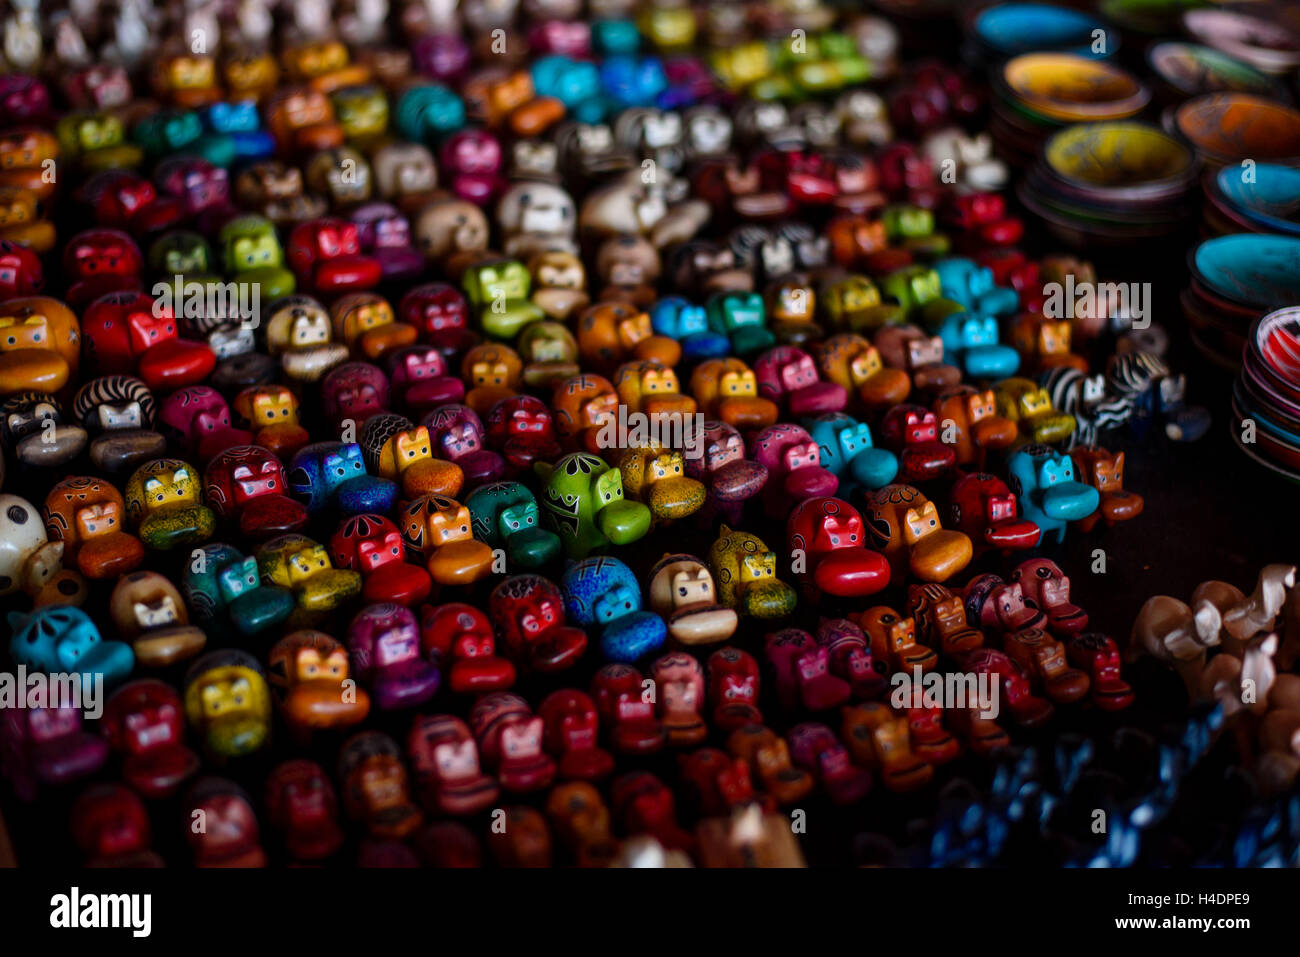 Color de fondo de la cadera de un negocio de souvenirs en Zanzíbar Foto de stock